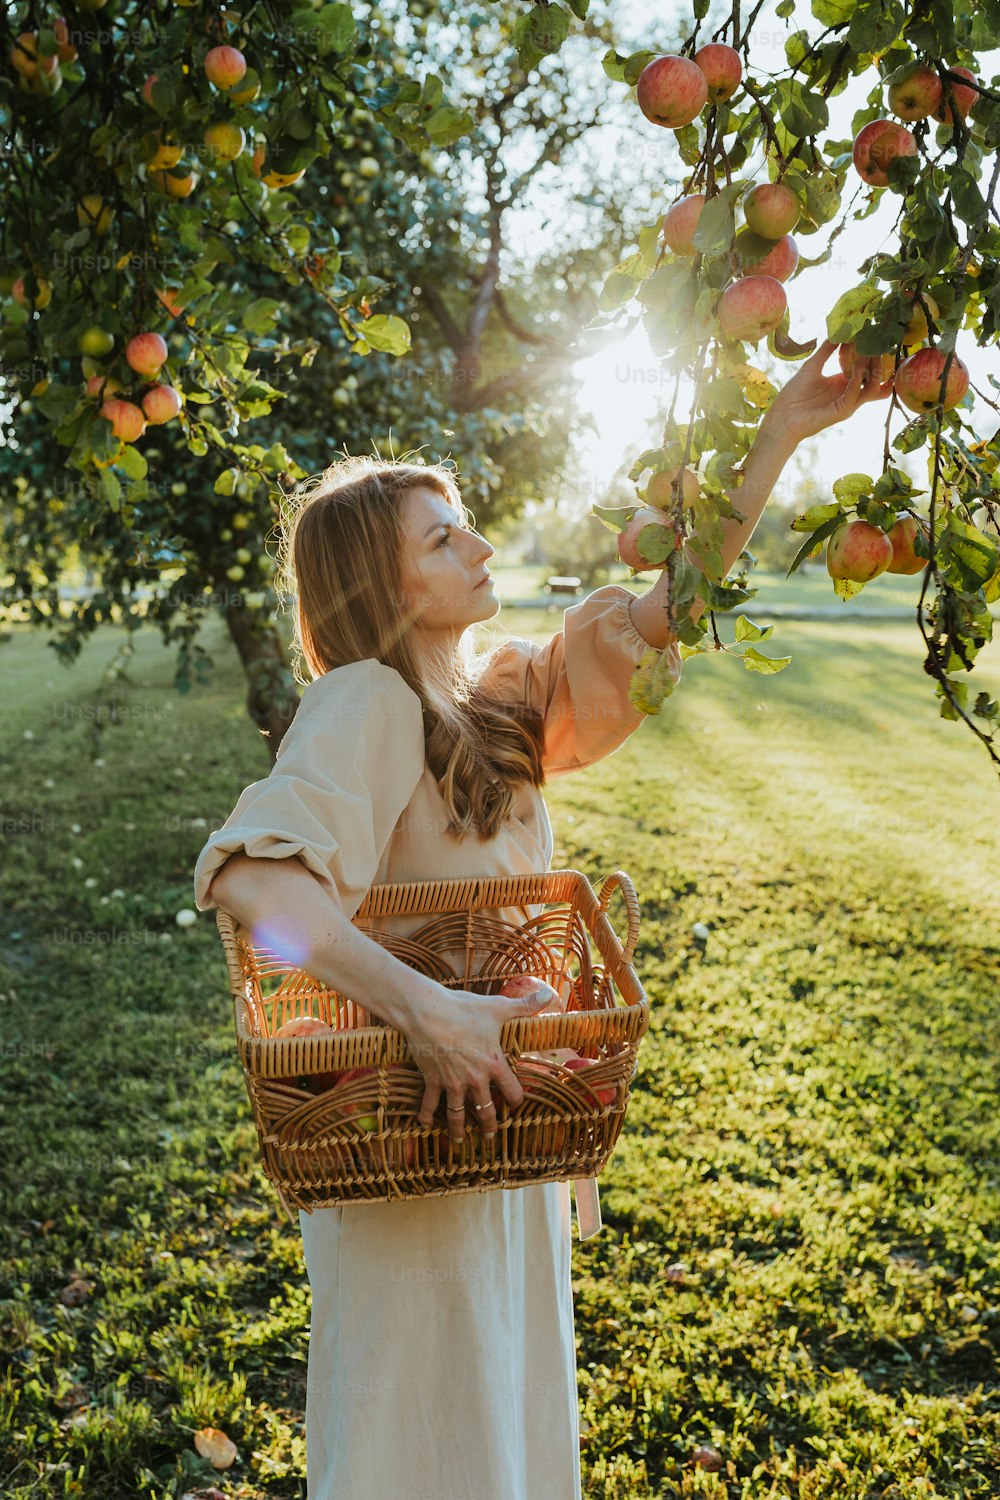 Une femme cueille des pommes dans un arbre